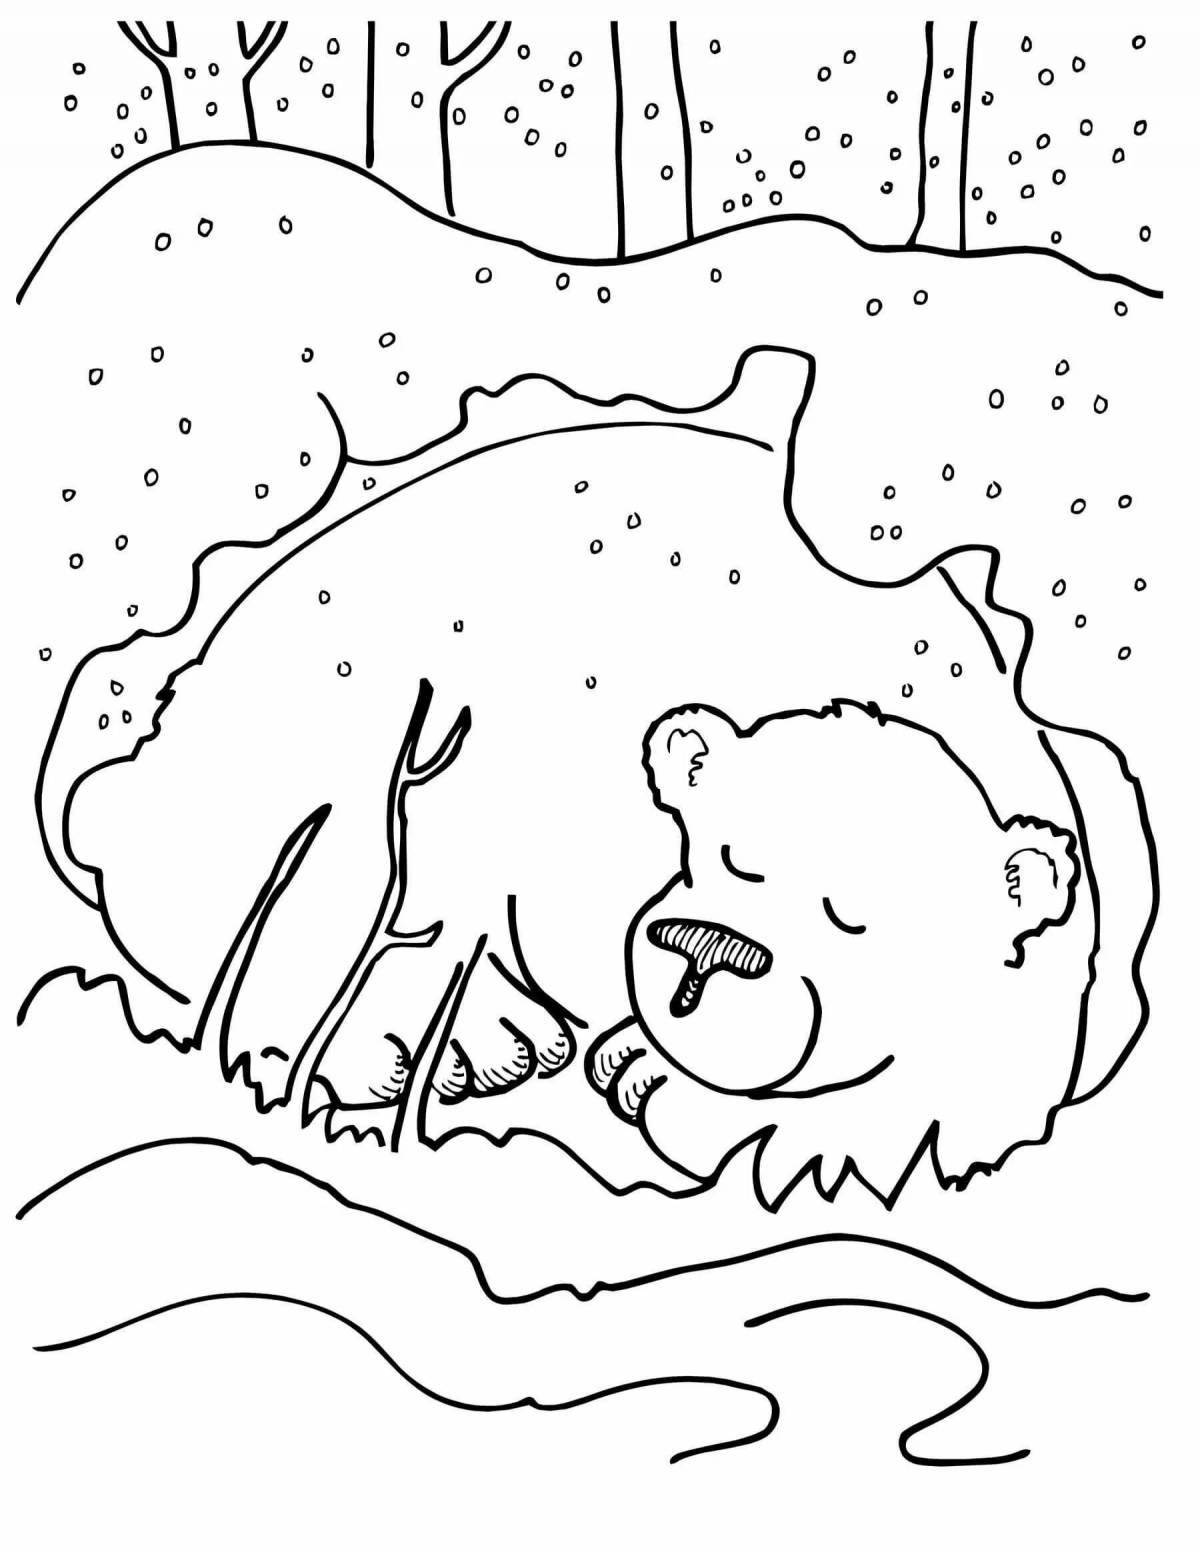 Coloring book joyful white bear cub